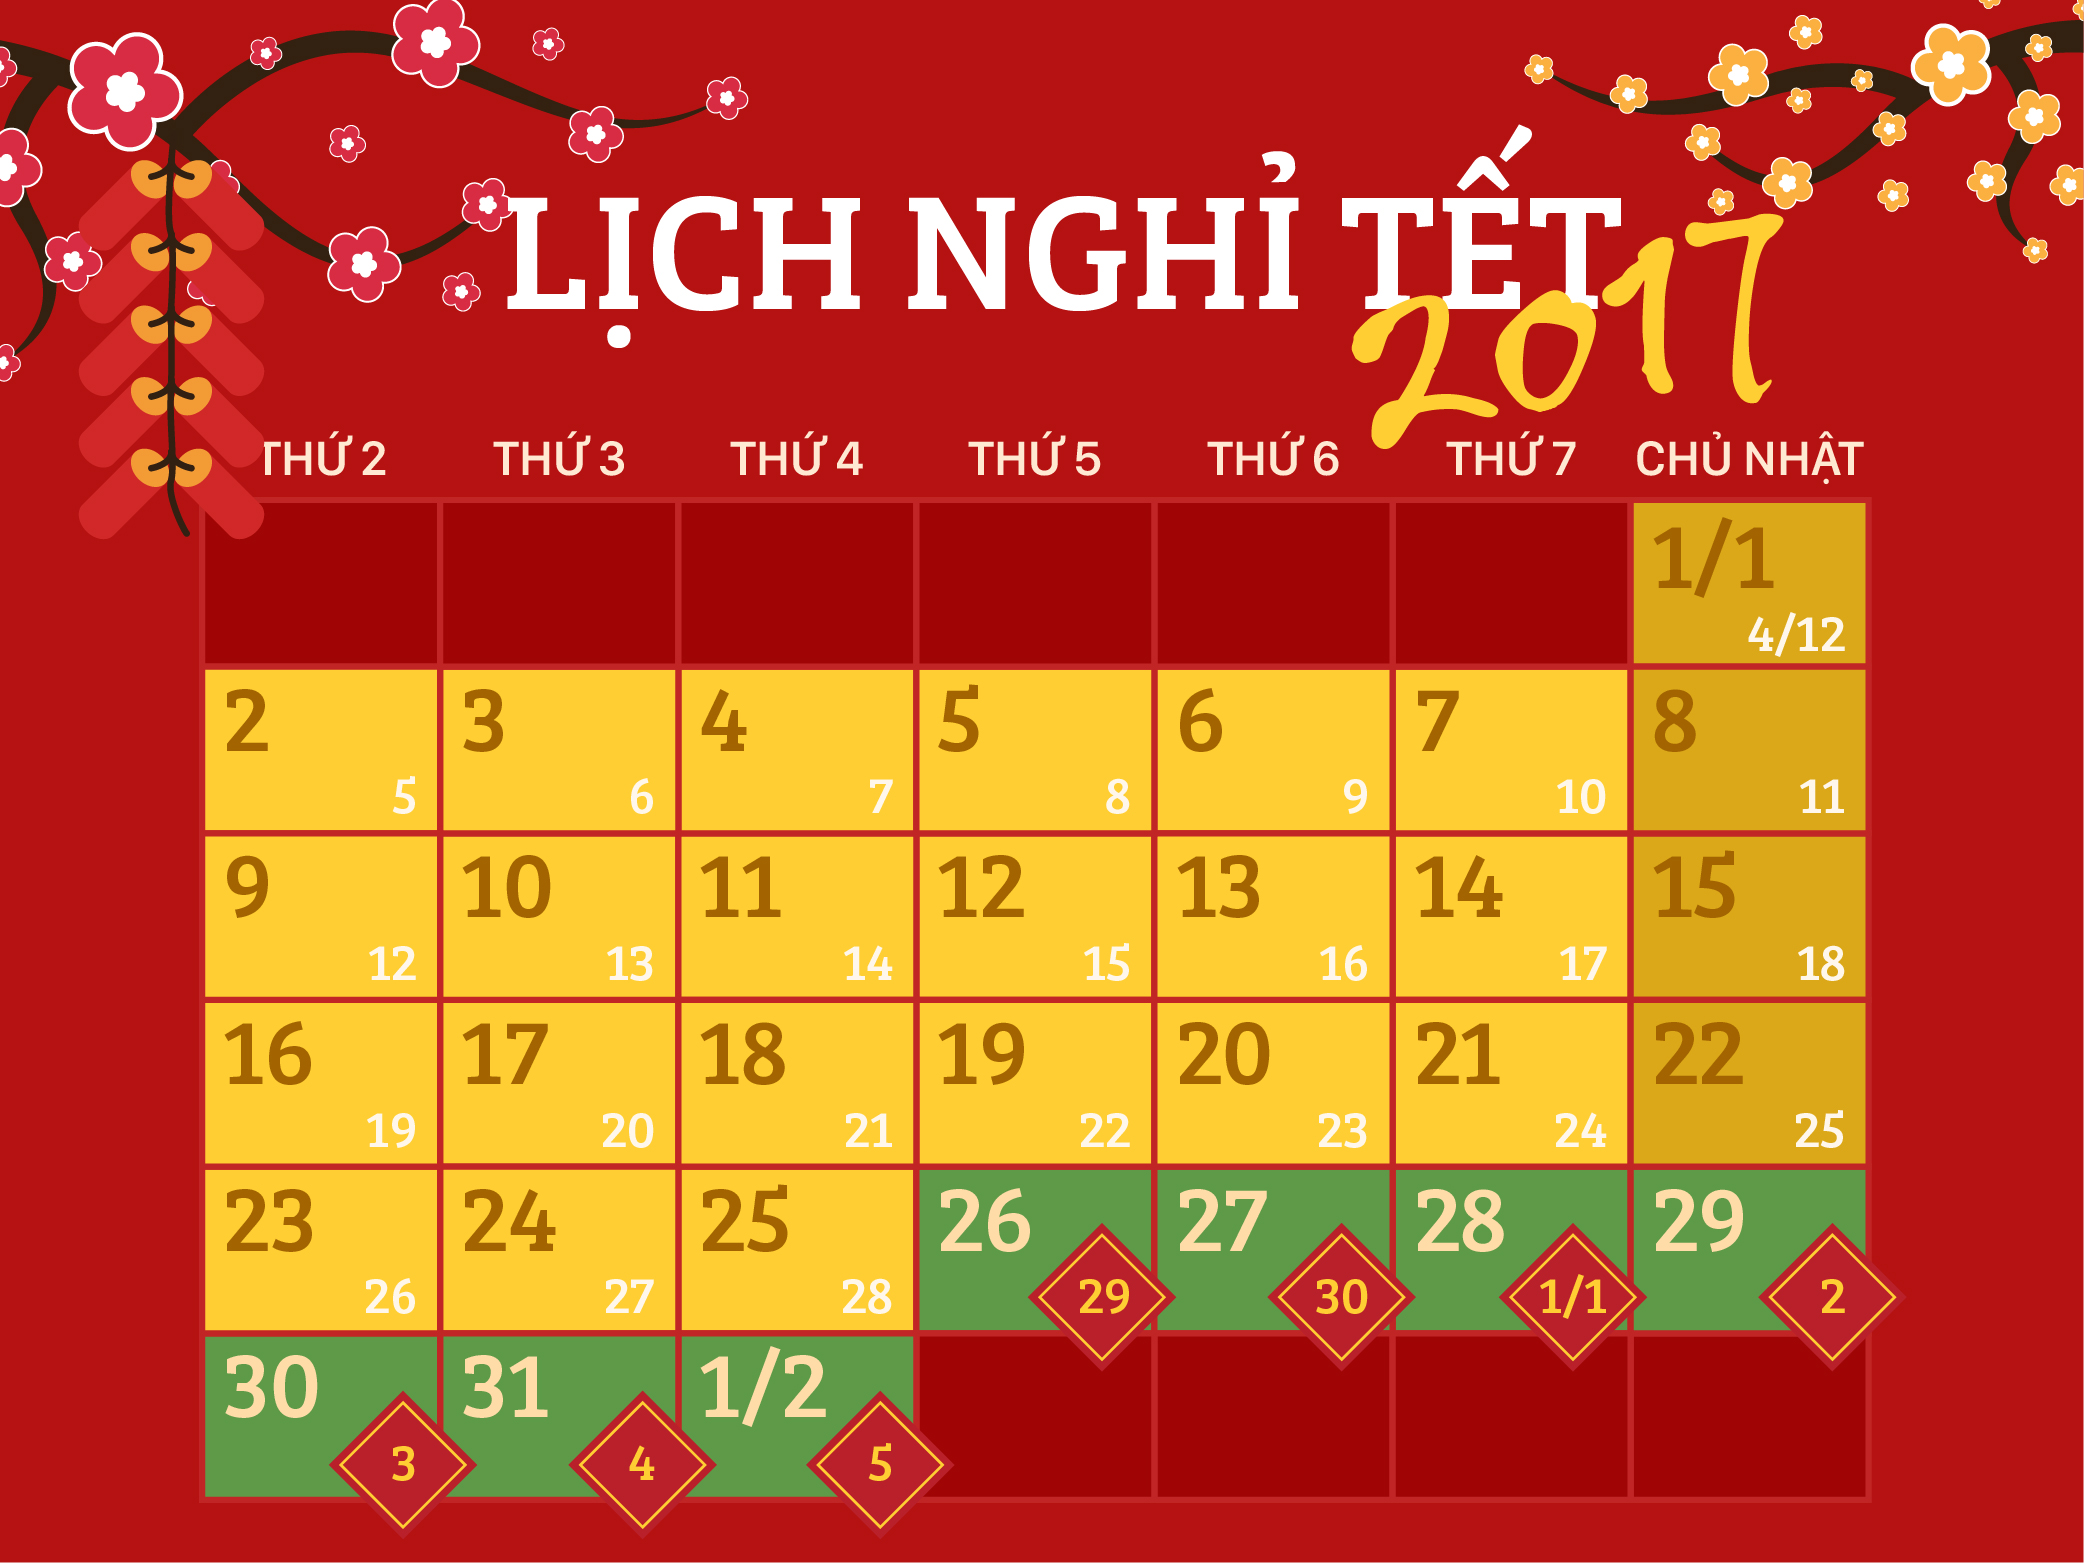 Bộ Lao động chính thức thông báo lịch nghỉ Tết Đinh Dậu 2017 - Ảnh 1.